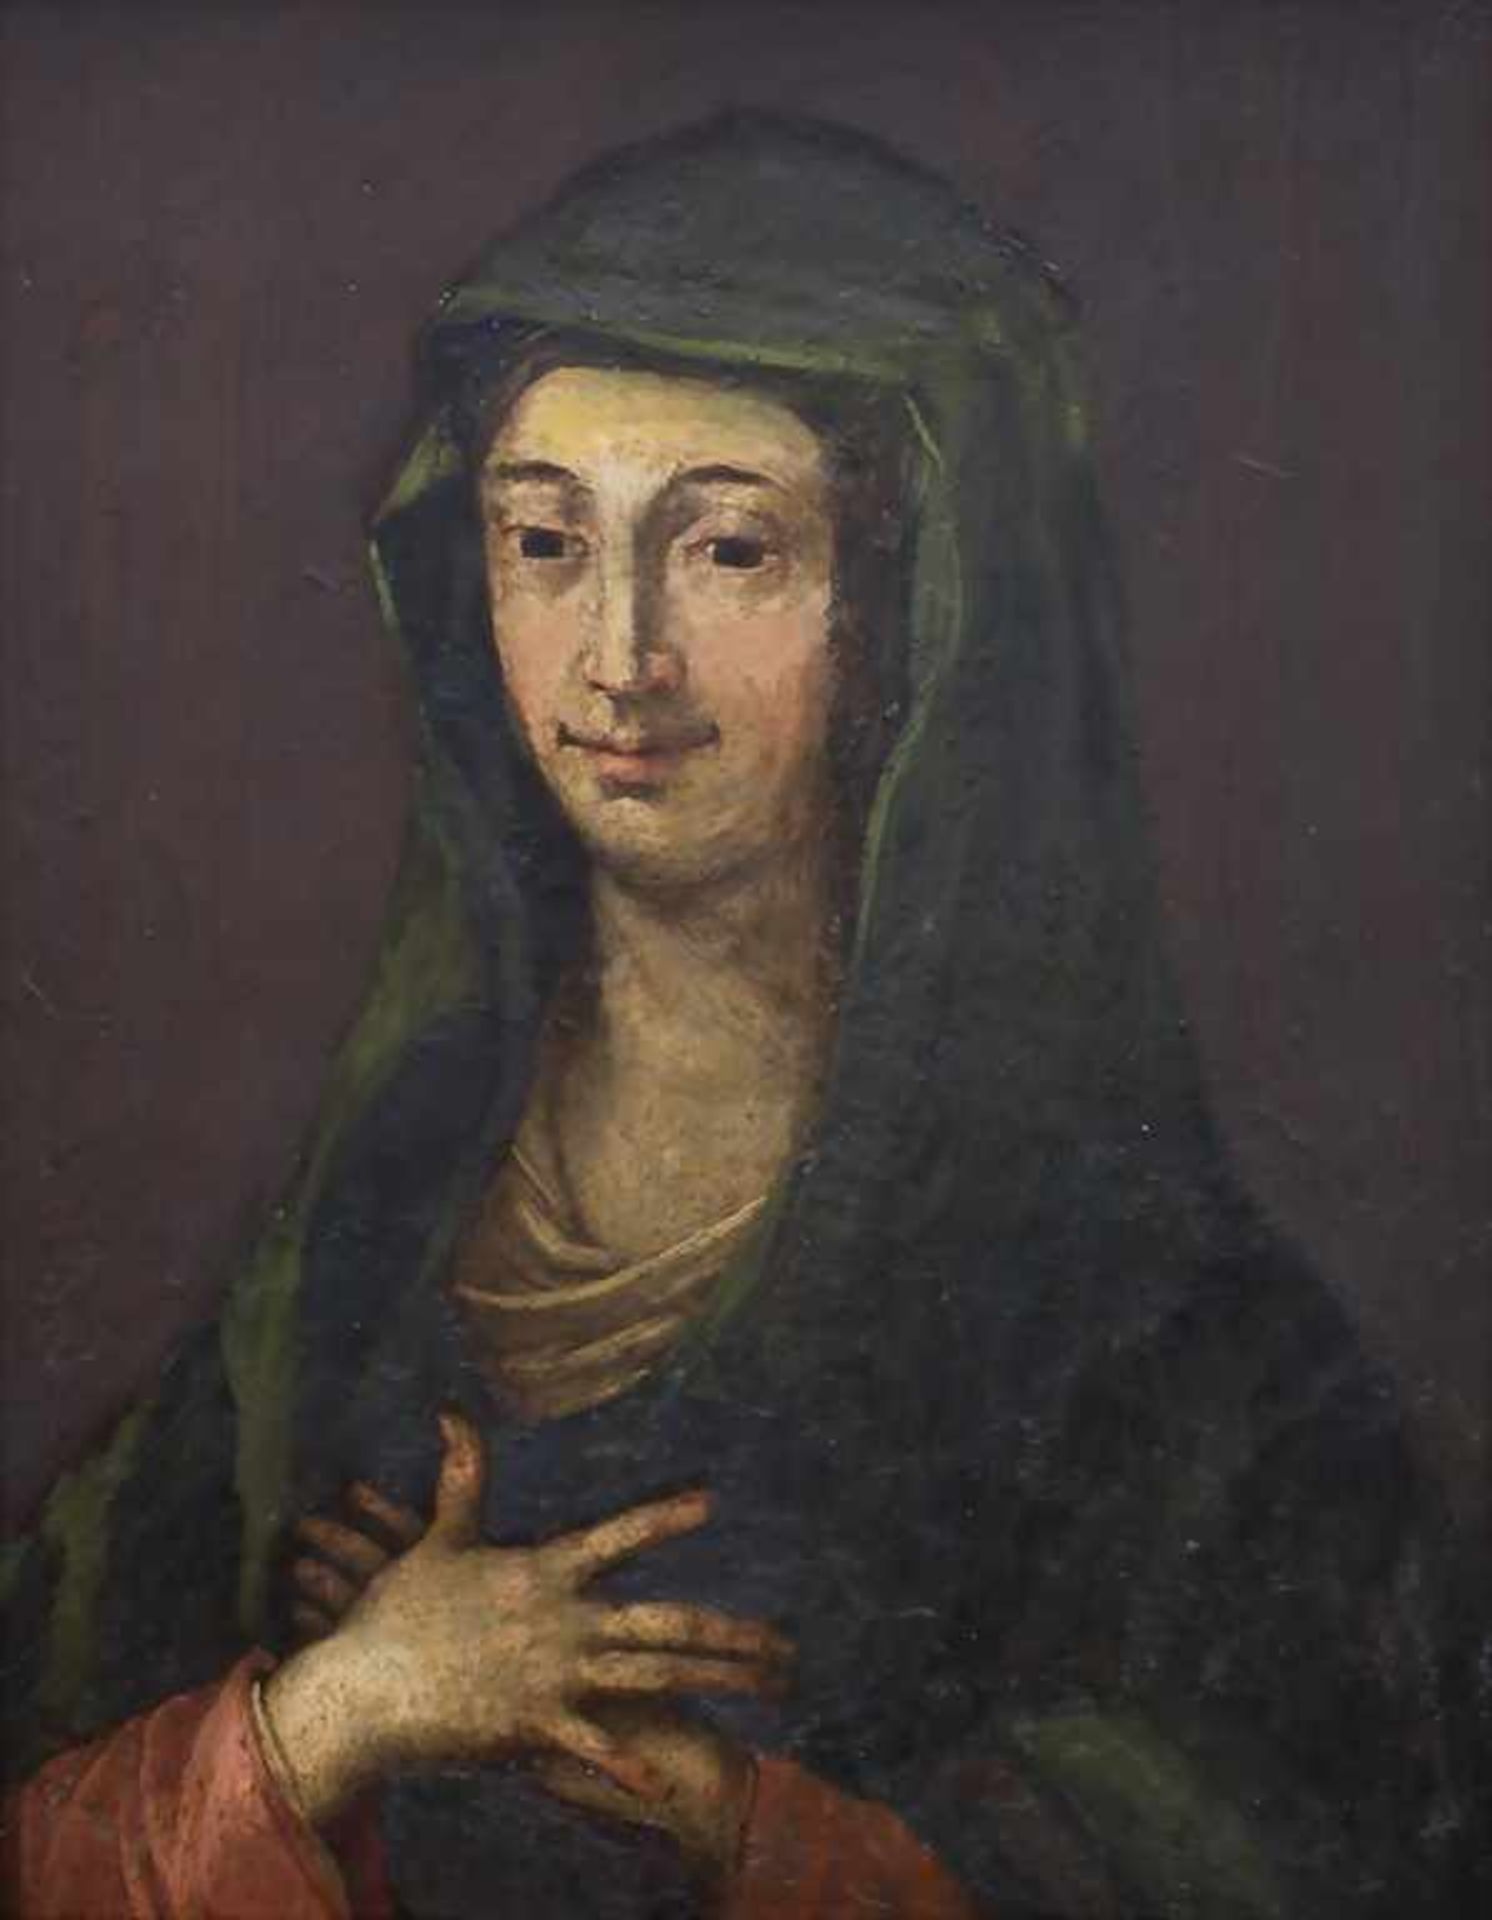 Unbekannter Künstler, 'Maria', 17./18. Jh. Technik: Öl auf Kupferplatte, gerahmt, Signatur: